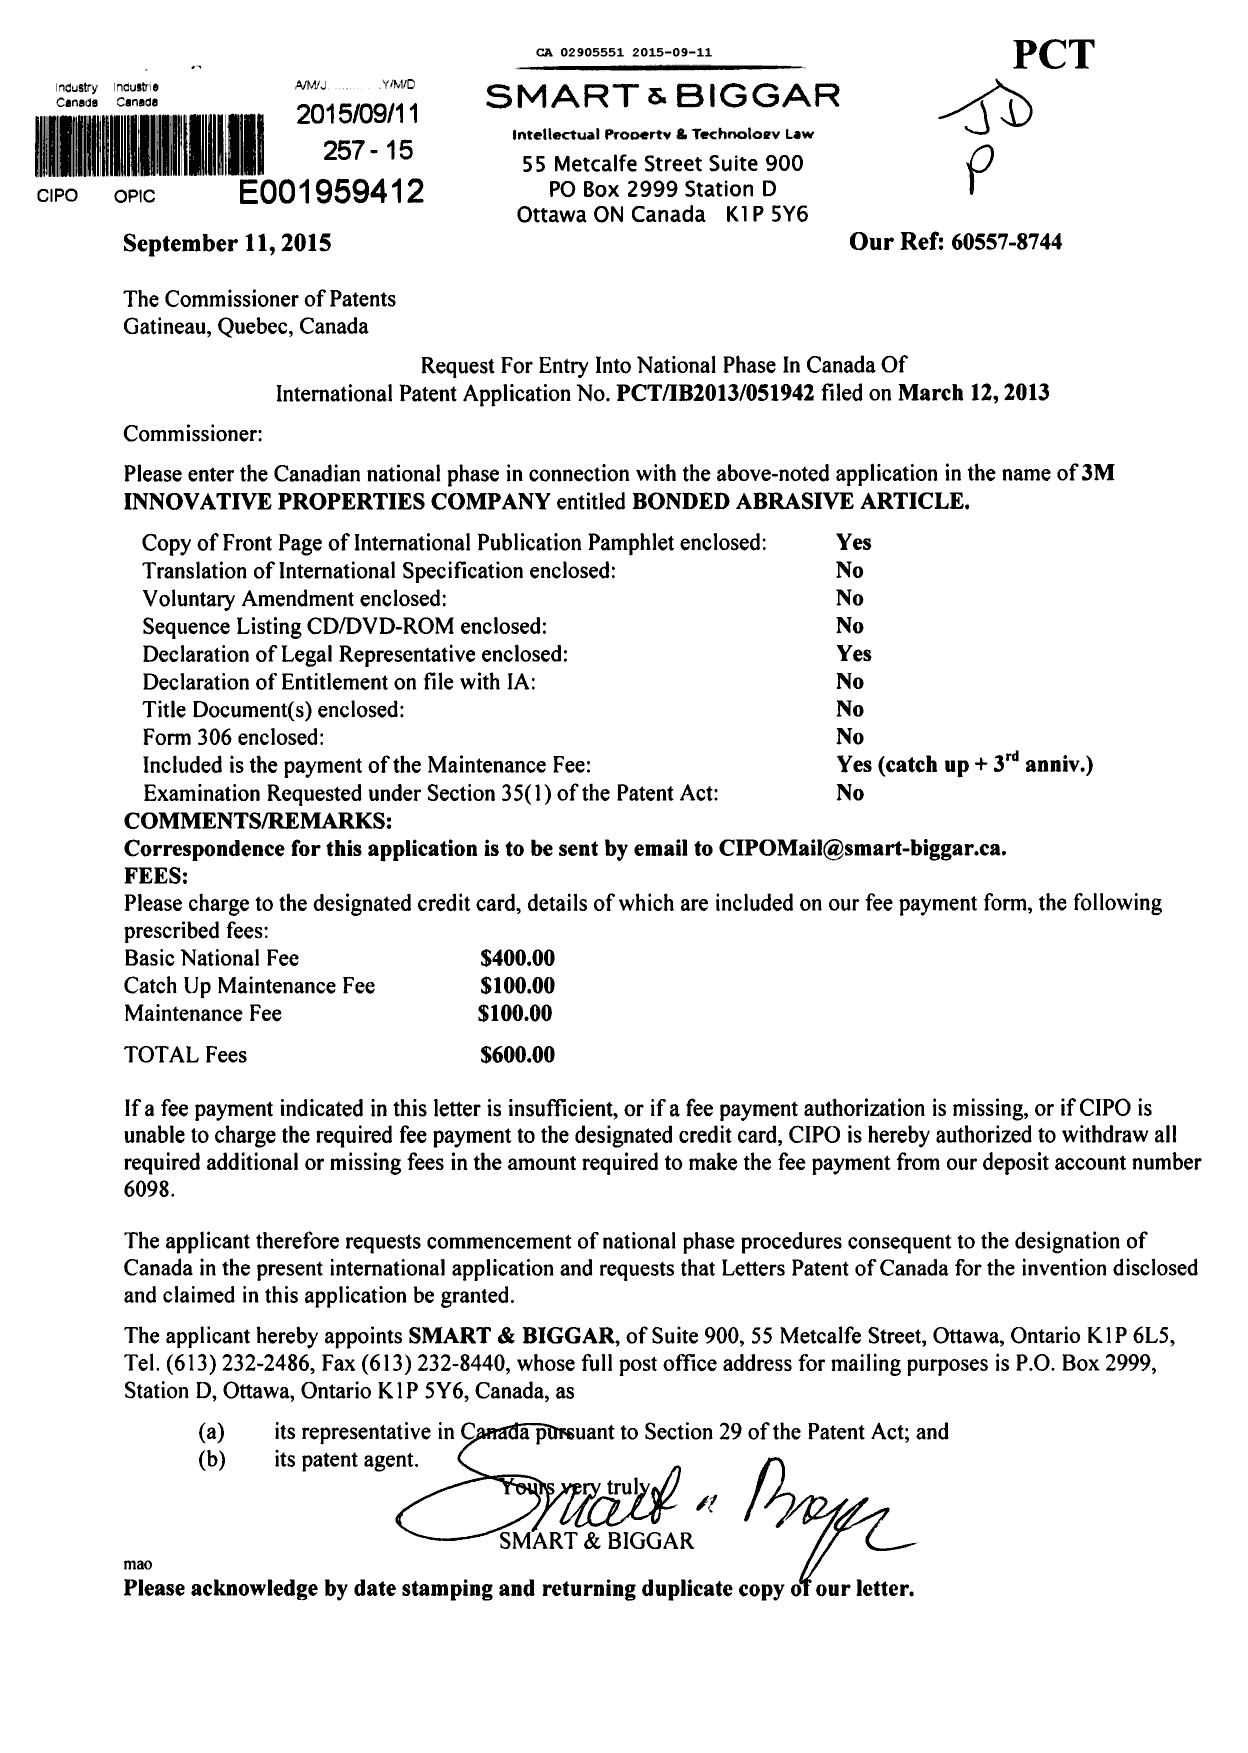 Document de brevet canadien 2905551. Demande d'entrée en phase nationale 20150911. Image 1 de 2